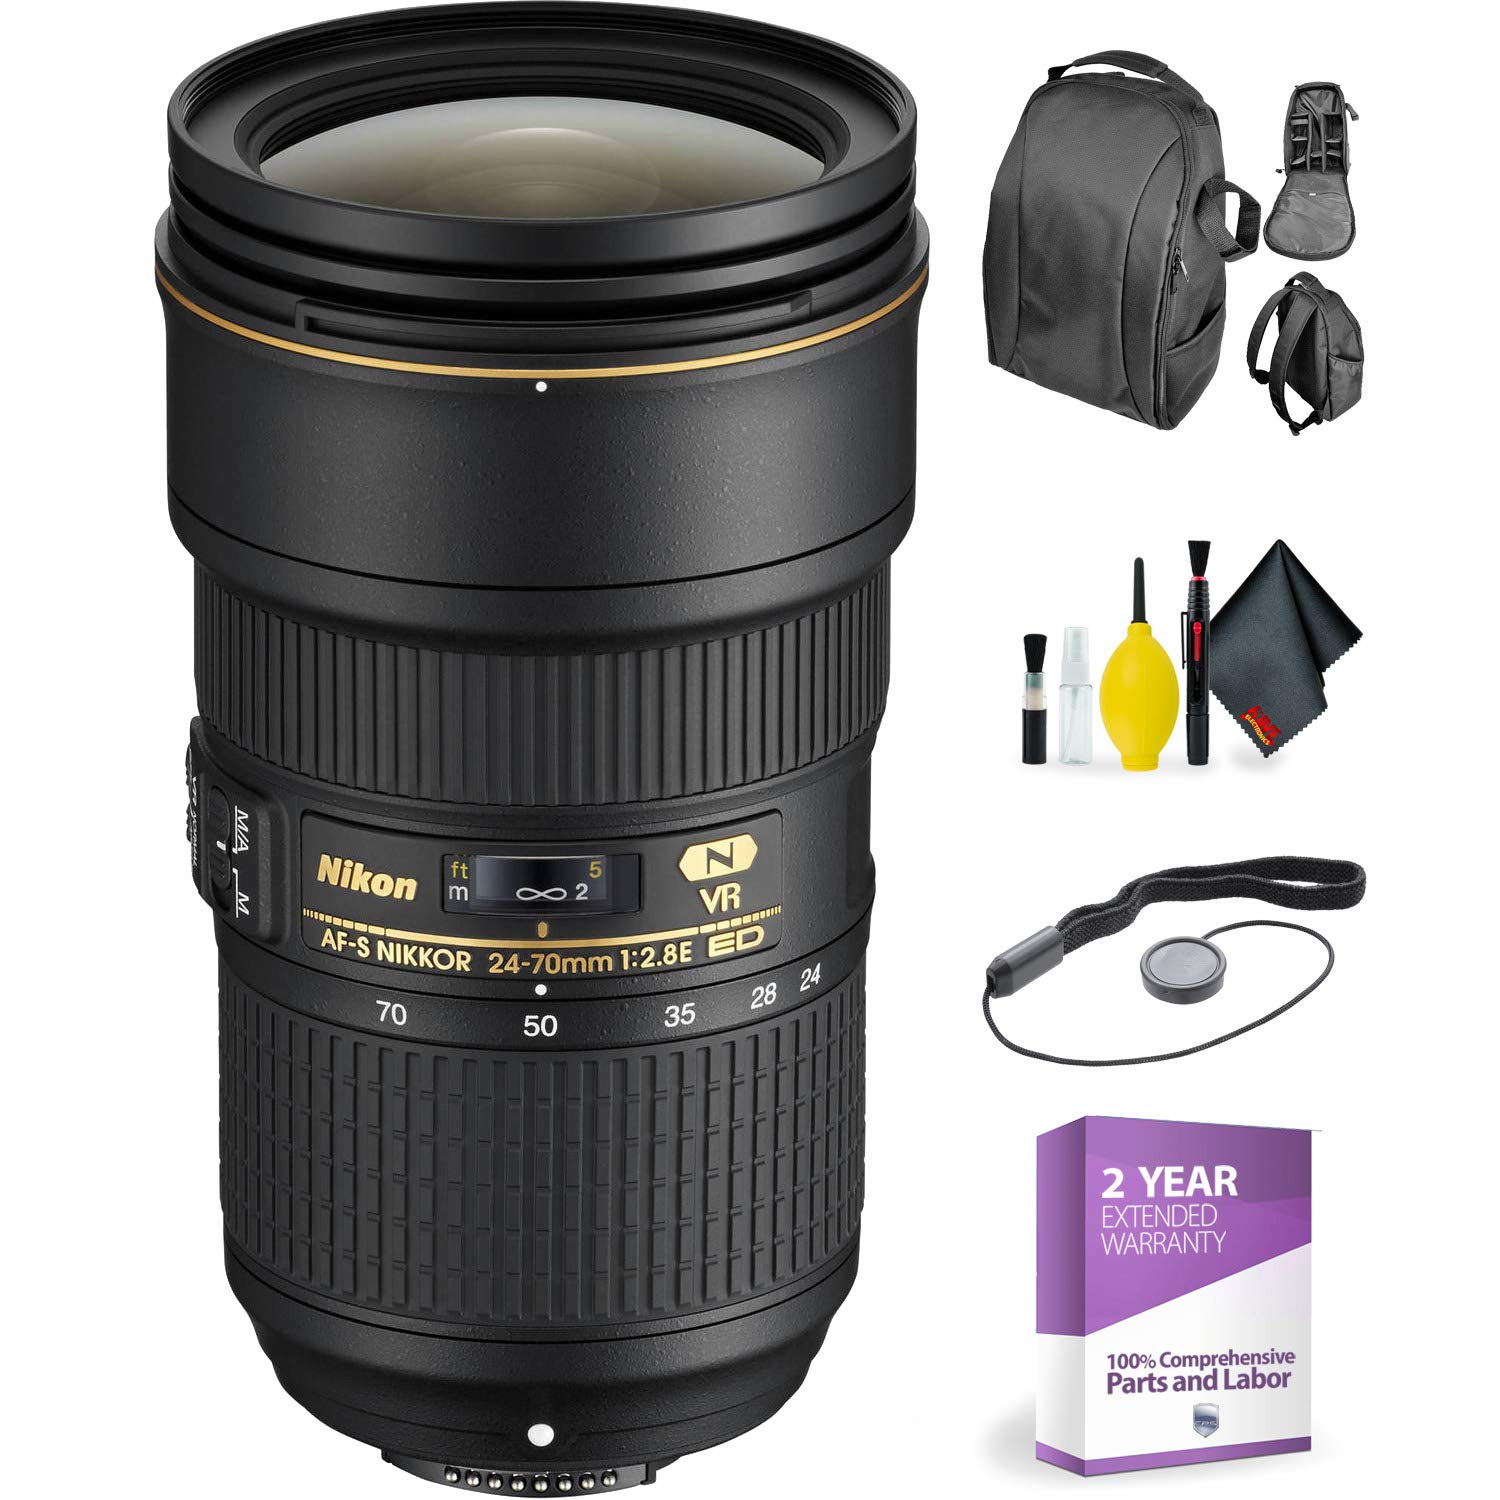 Nikon AF-S NIKKOR 24-70mm f/2.8E ED VR + Deluxe Lens Cleaning Kit Bundle